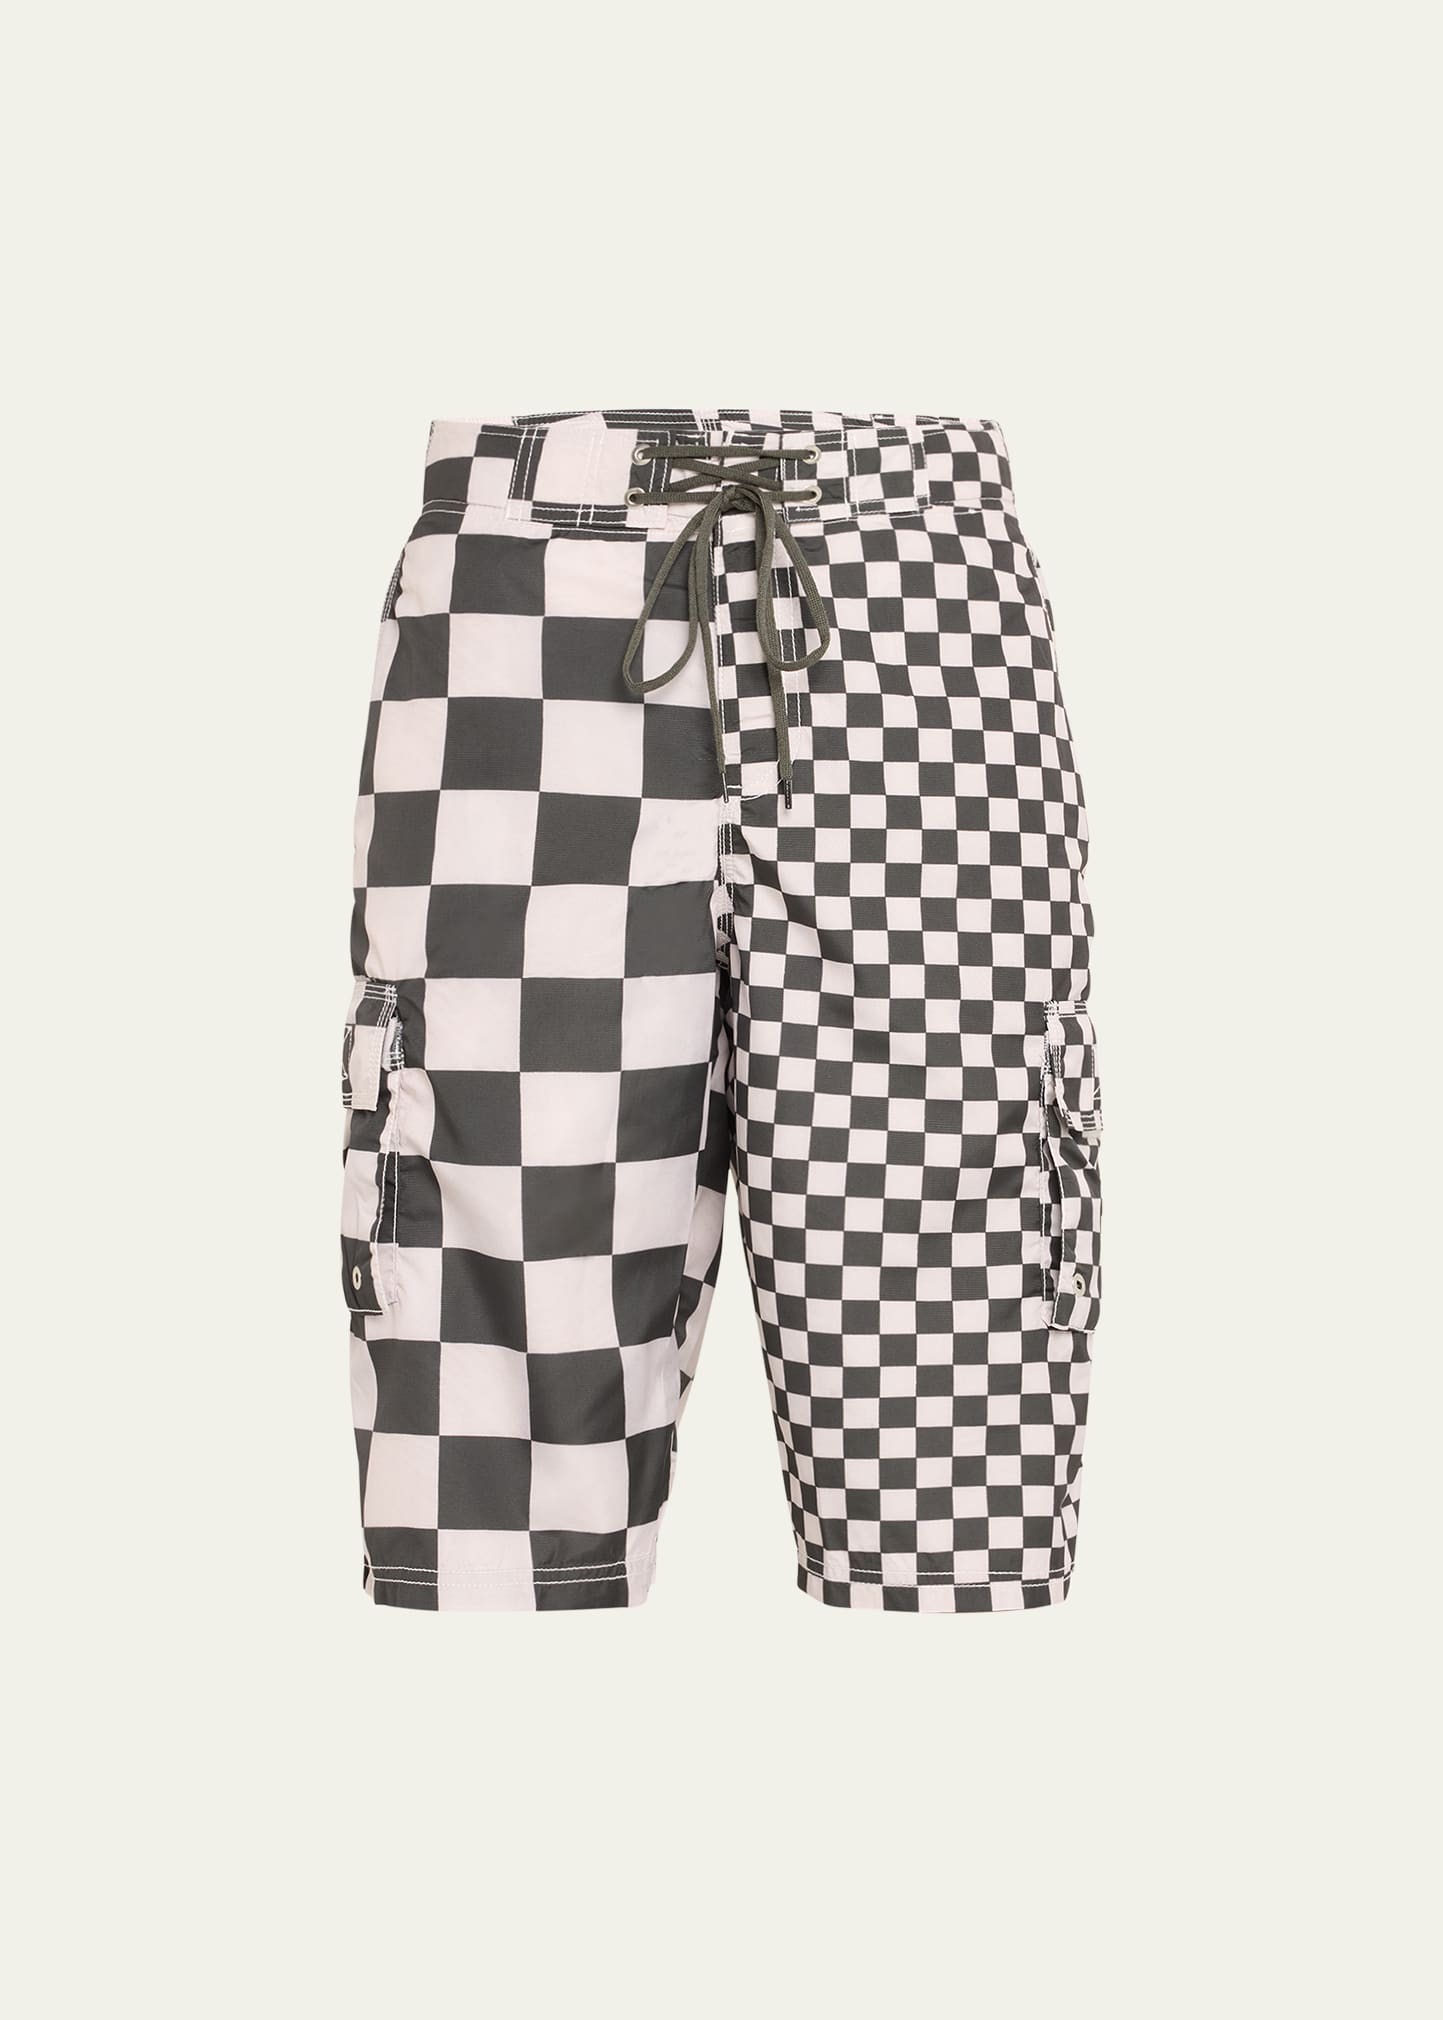 Shop Erl Men's Paneled Checker Cargo Shorts